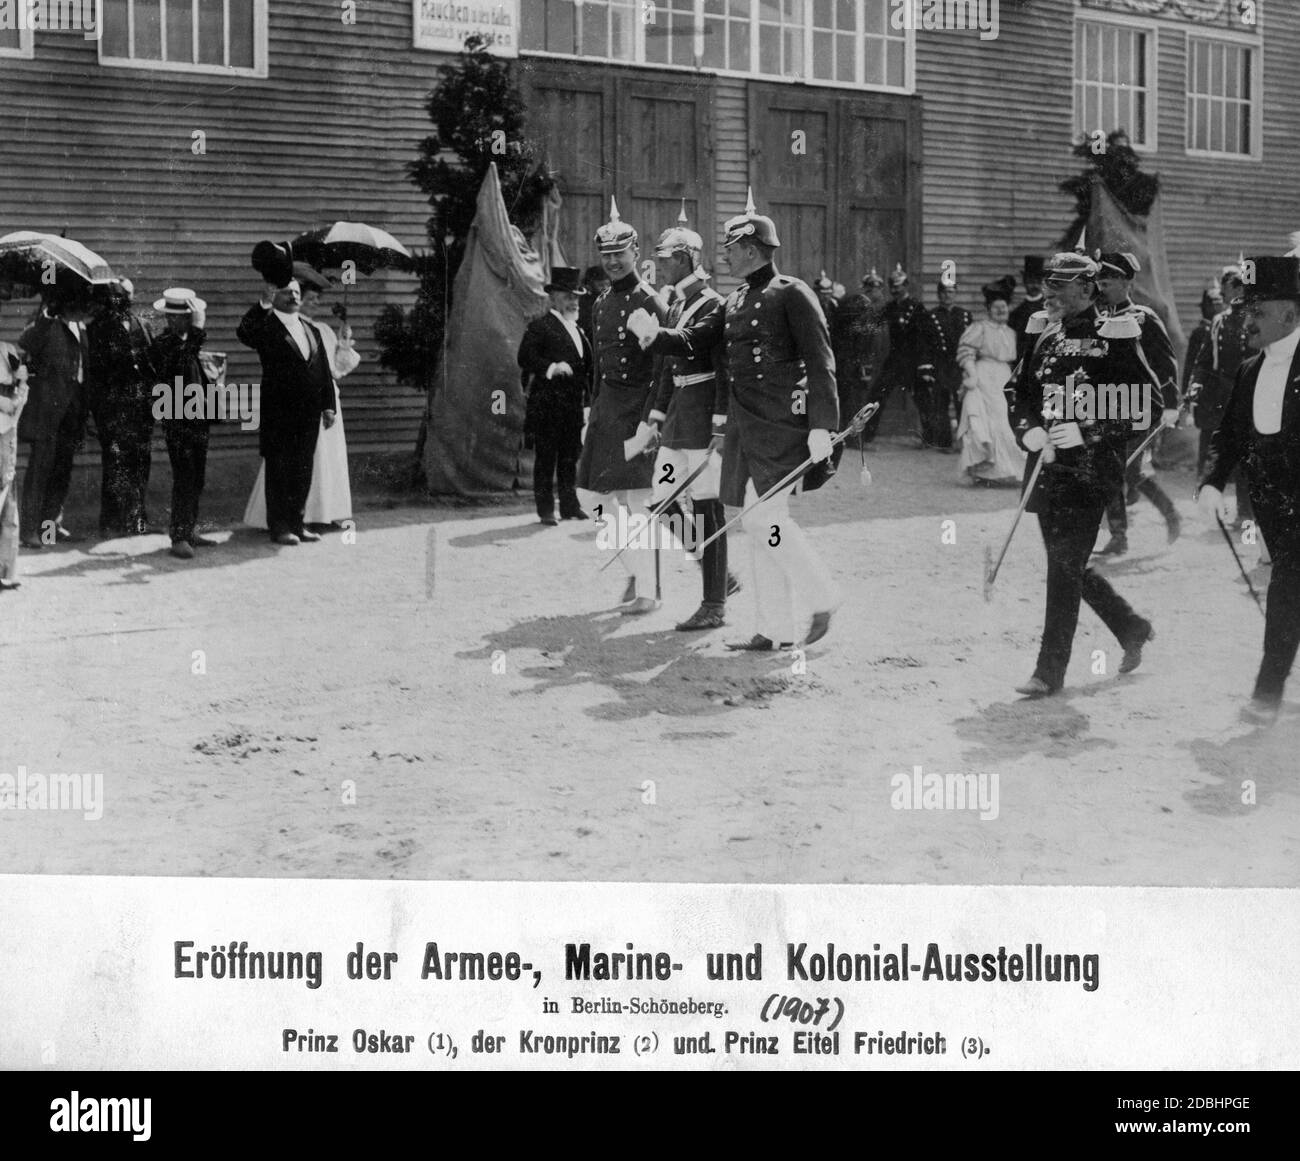 Prinz Oskar (1), Kronprinz Wilhelm (2) und Prinz Eitel Friedrich (3) bei der Eröffnung der Armee-, Marine- und Kolonialausstellung in Berlin. Die Bürger grüßen, indem sie ihre Hüte ziehen. Stockfoto